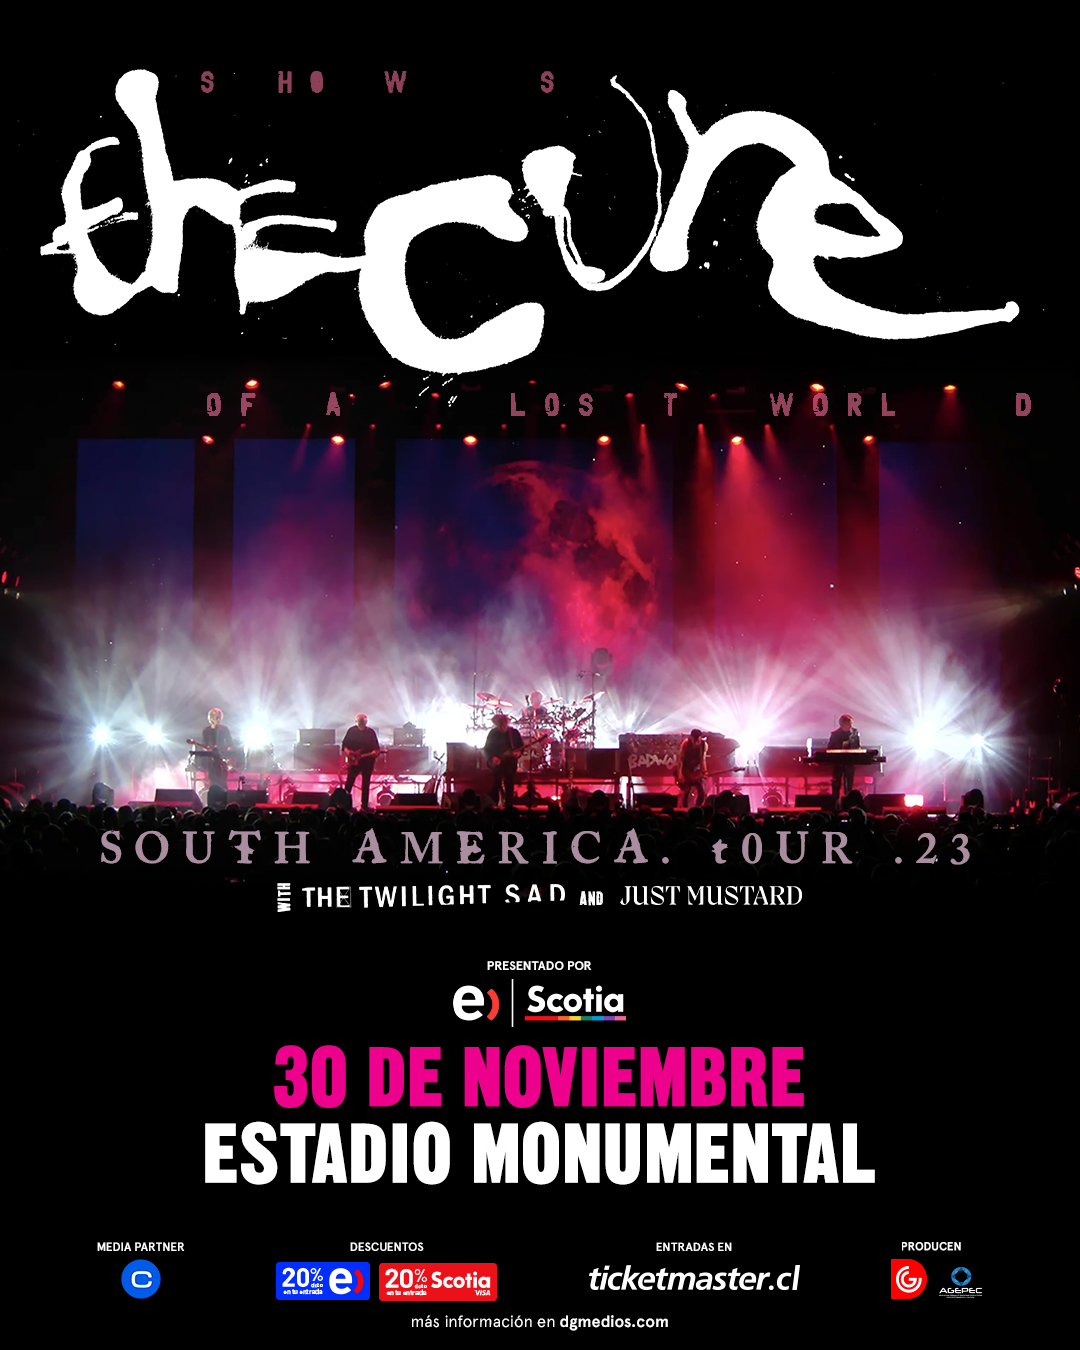 The Cure regresa a Chile con su gira «Shows Of a Lost World»: 30 de noviembre en el Estadio Monumental